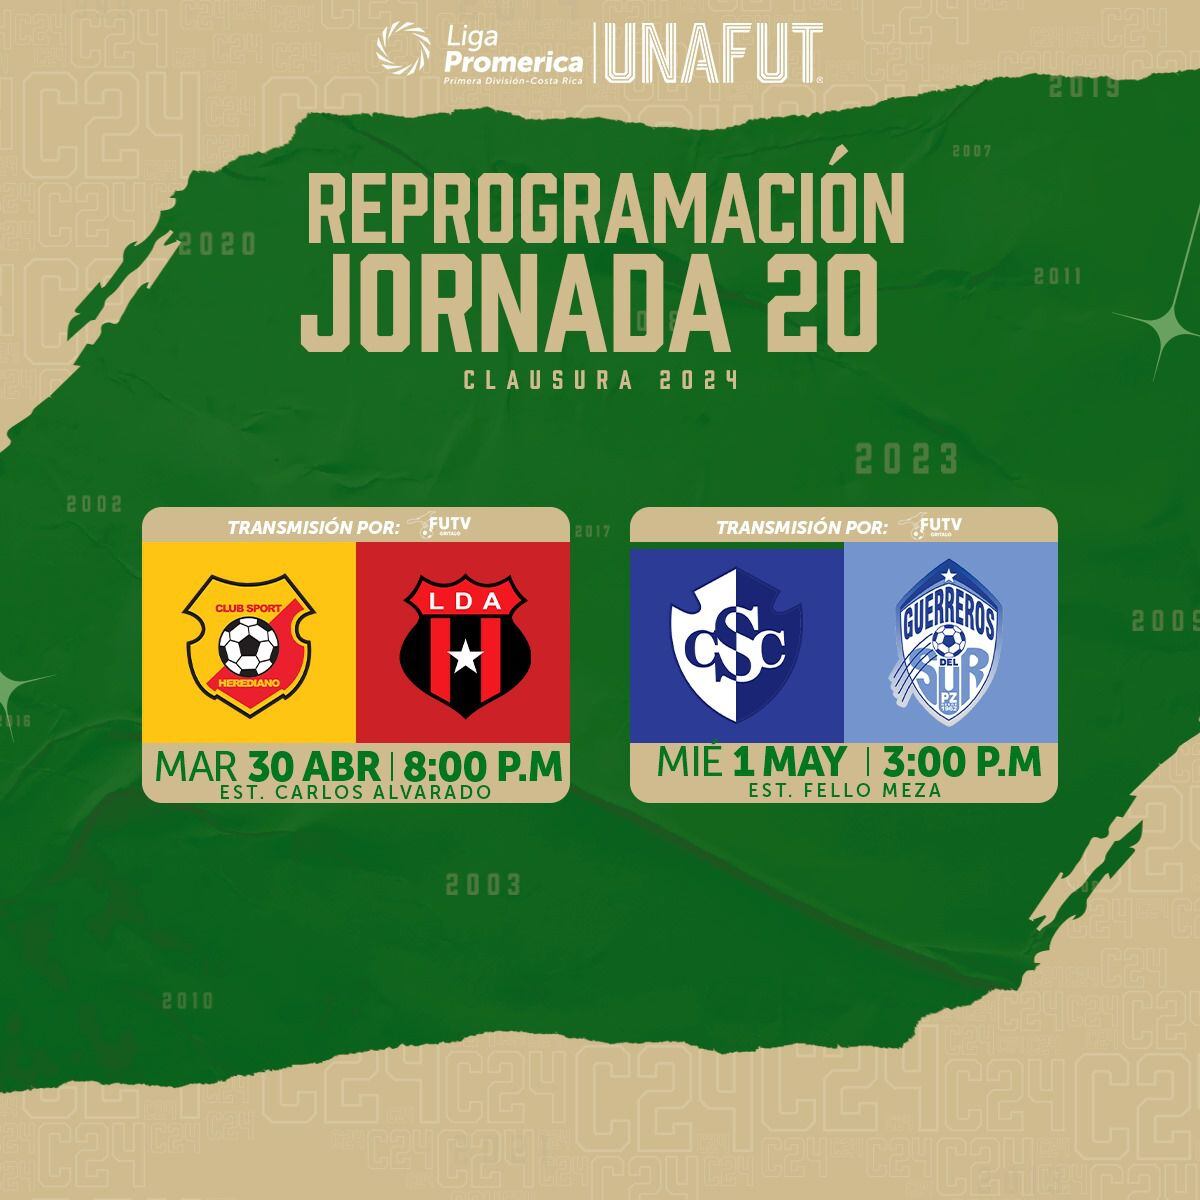 Así anunció la Unafut la programación del juego Herediano vs. Alajuelense y Cartaginés vs. Pérez Zeledón, de esta semana. Unafut